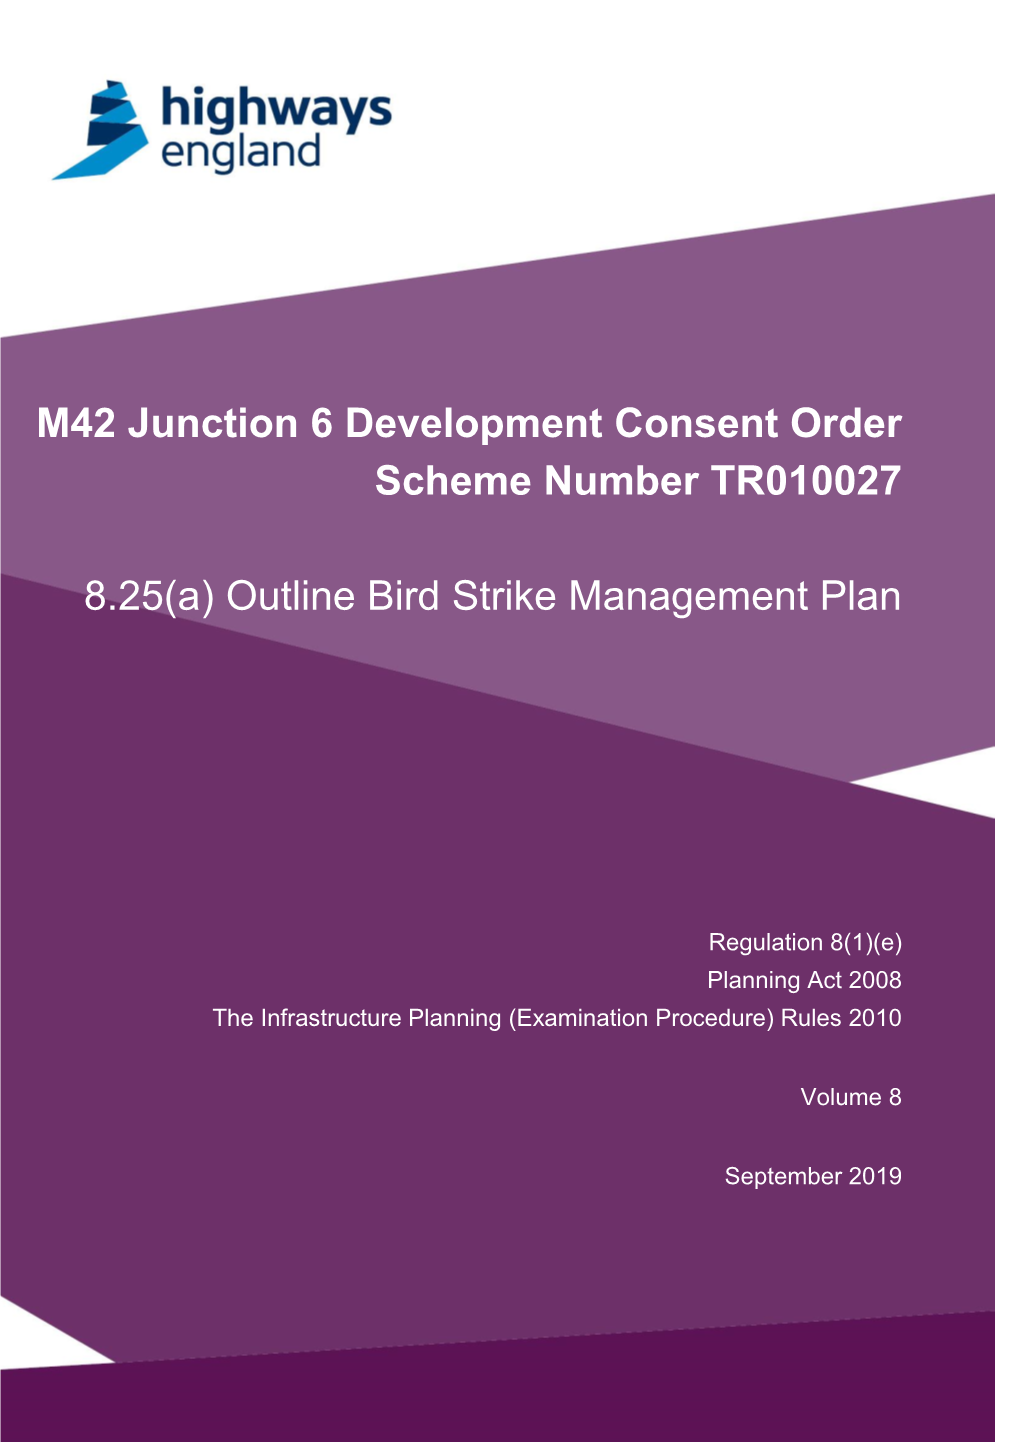 Outline Bird Strike Management Plan